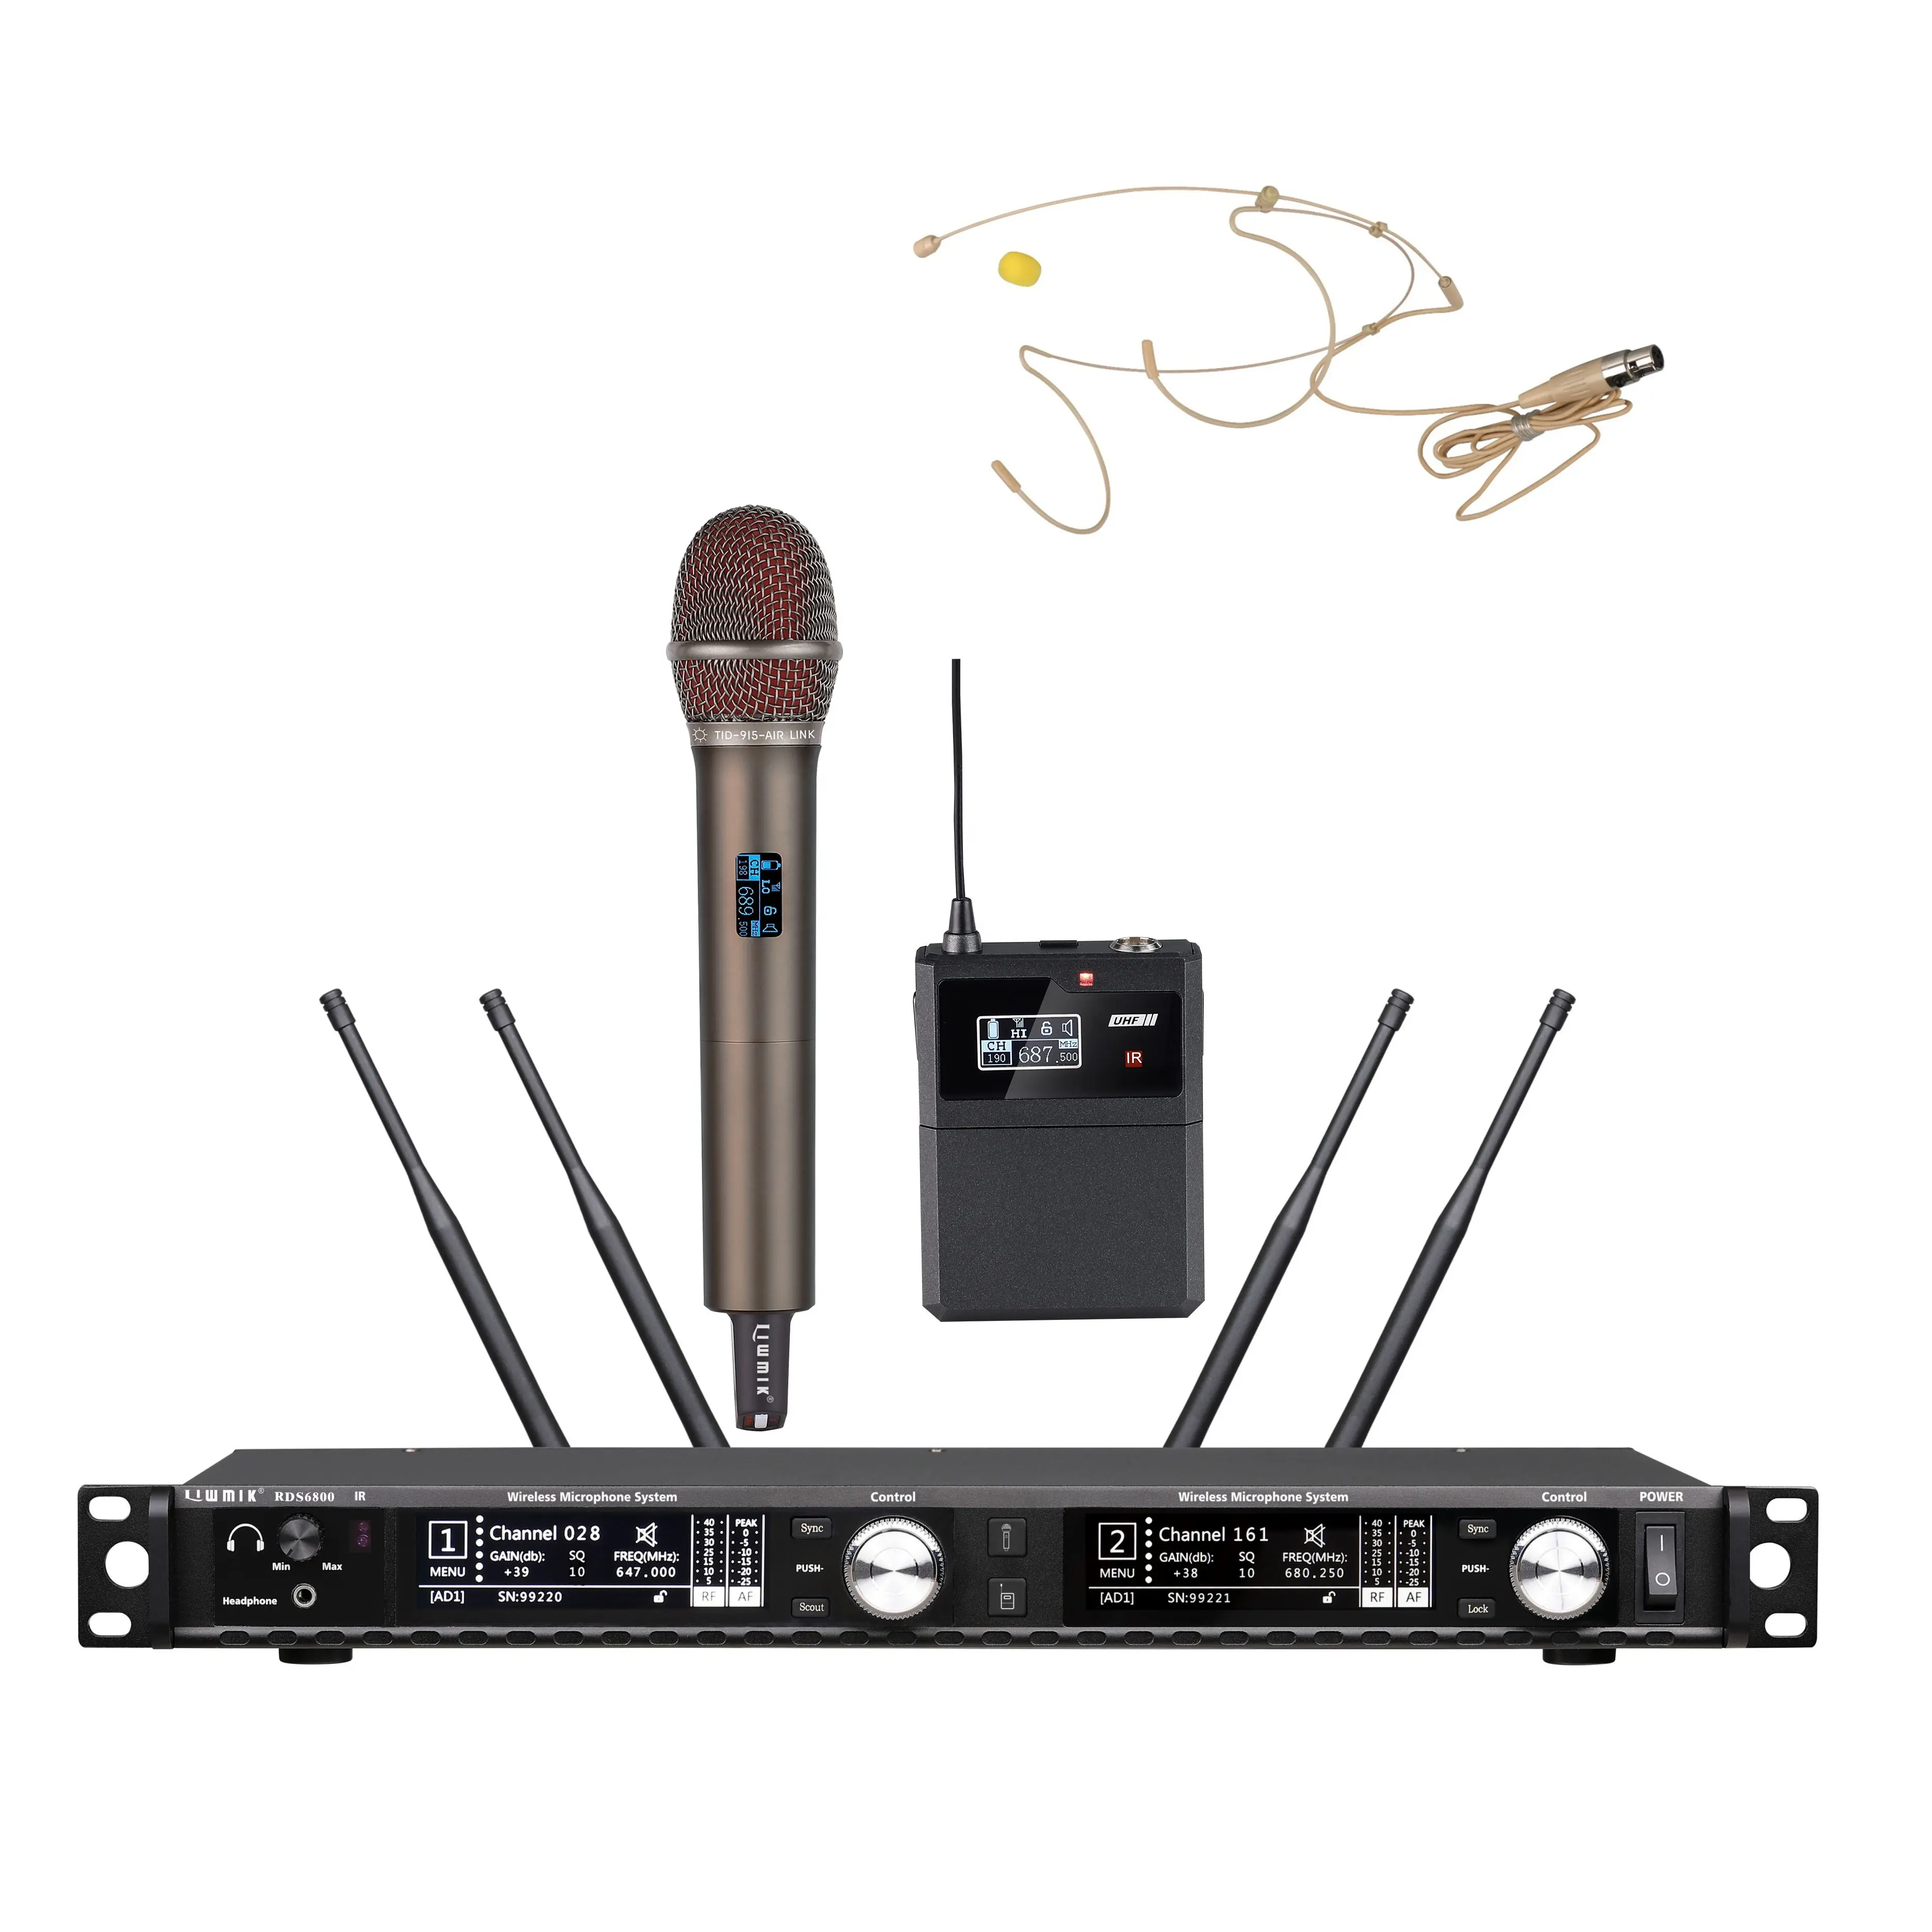 RBAFF0E0 UHF Pro Audio PLL двухканальный, истинное разнообразие, беспроводной ручной микрофон + мини-корпус + микрофон для гарнитуры 300 м, большой радиус действия